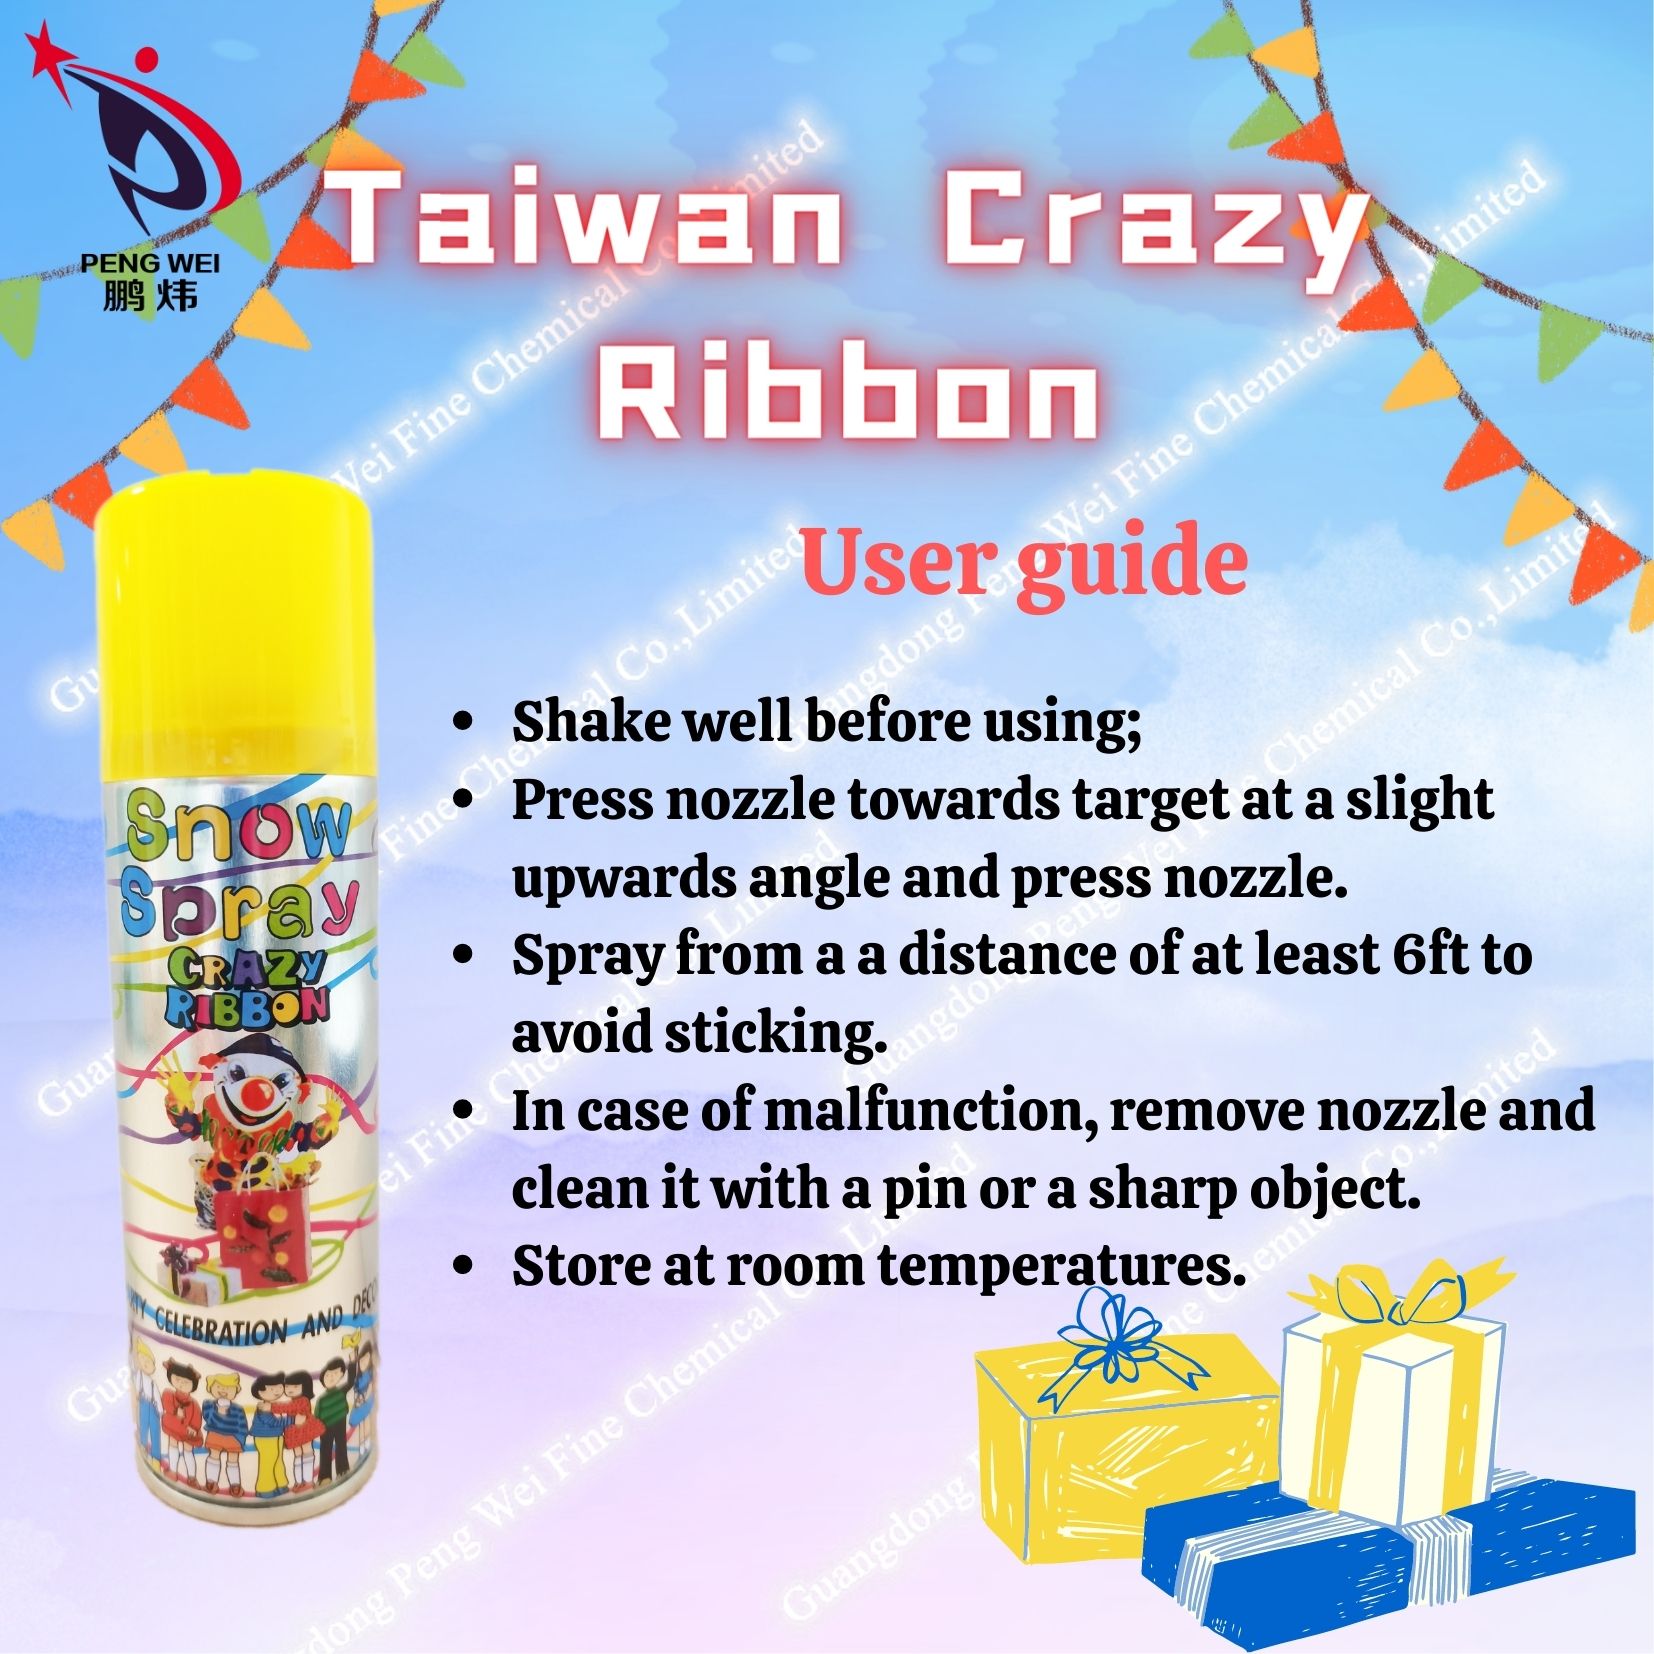 Taiwan-crazy-ribbon-03